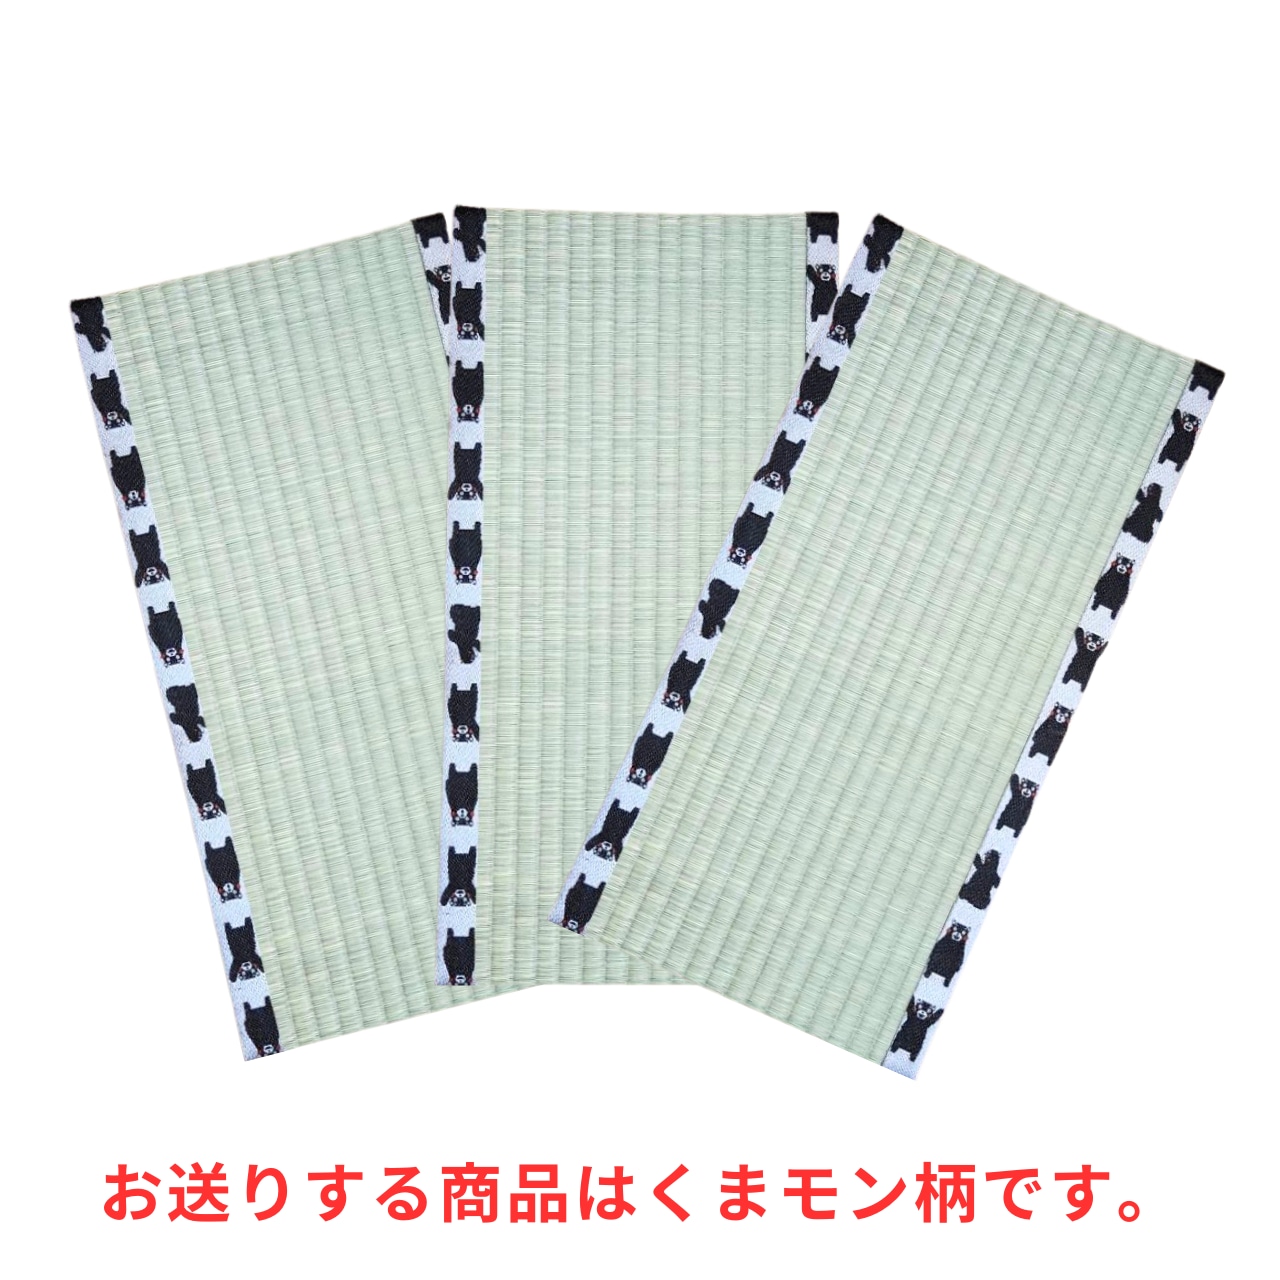 熊本県産高級い草100% お猫様専用ミニ畳3枚セット くまモン柄 | NIHONT